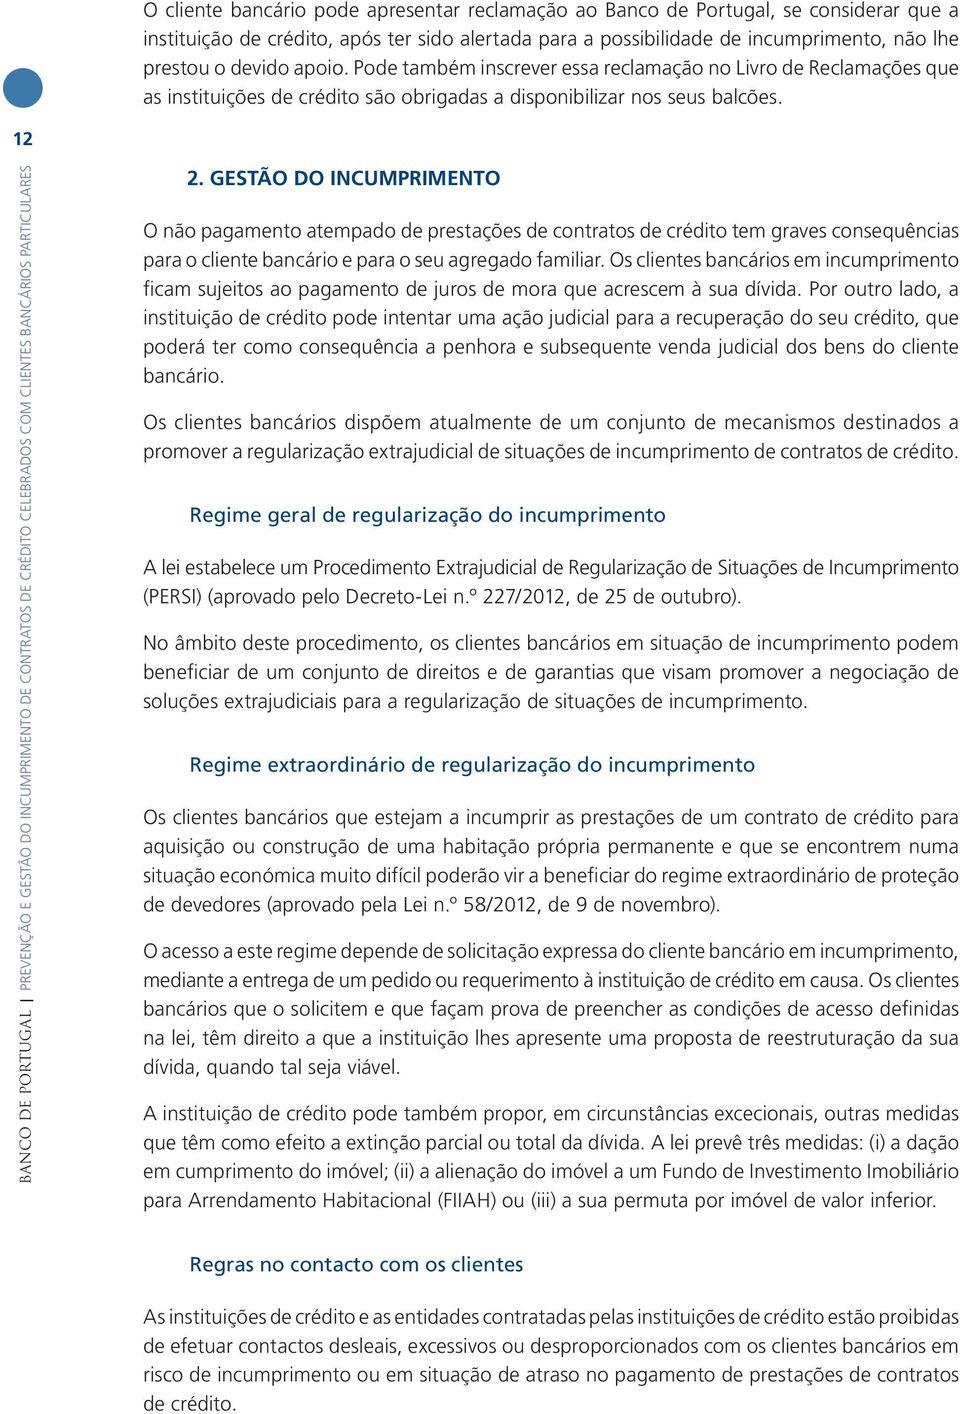 12 BANCO DE PORTUGAL PREVENÇÃO E GESTÃO DO INCUMPRIMENTO DE CONTRATOS DE CRÉDITO CELEBRADOS COM CLIENTES BANCÁRIOS PARTICULARES 2.